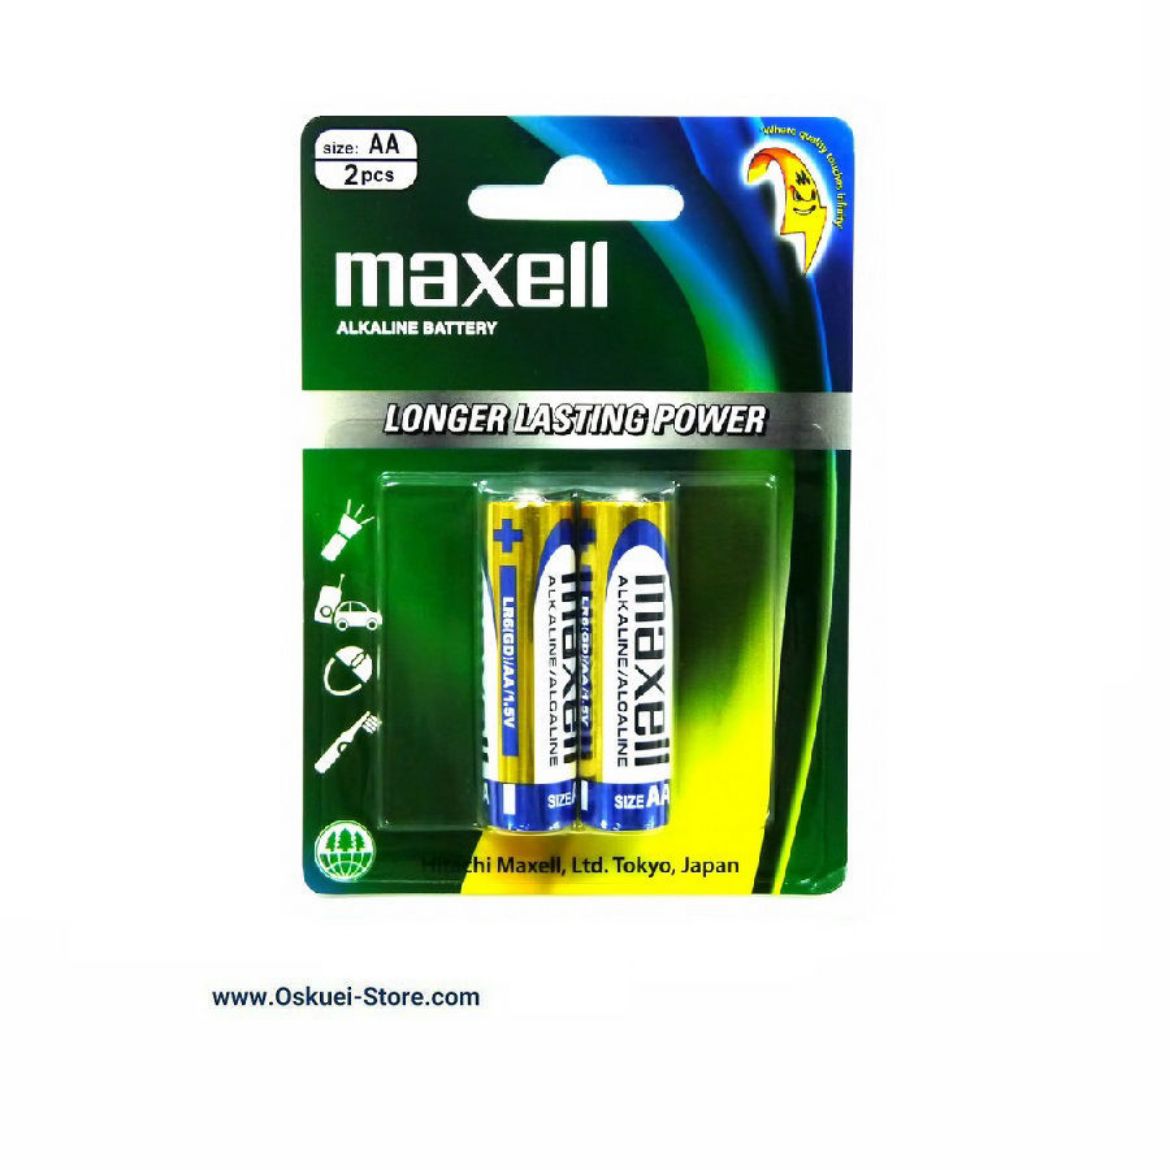 Maxell AA Alkaline Battery 